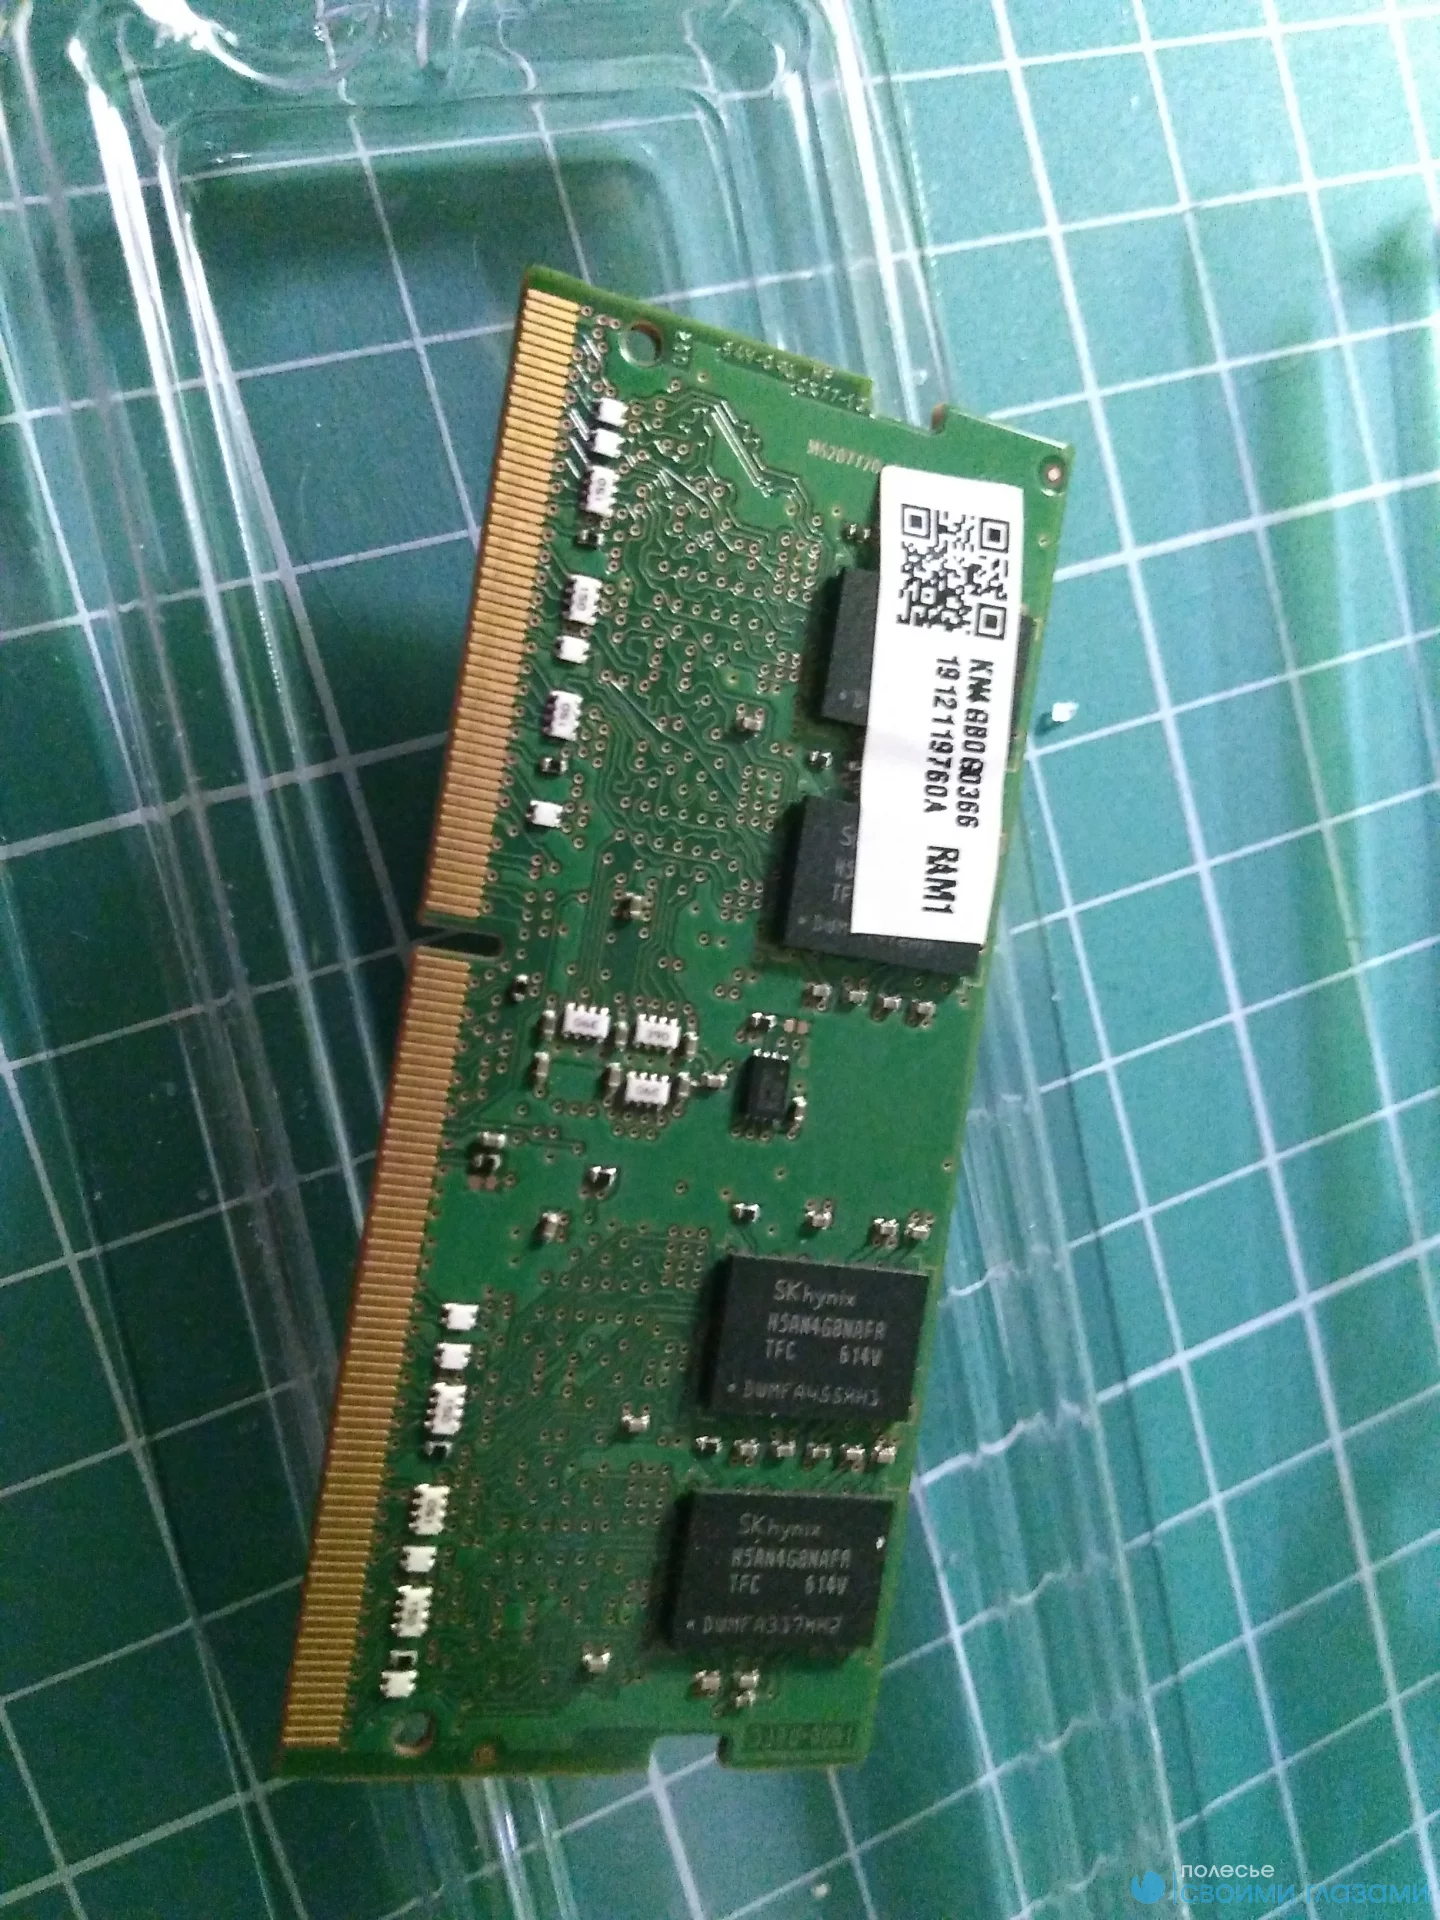 Hynix 4Gb DDR4 SO-DIMM PC4-2133